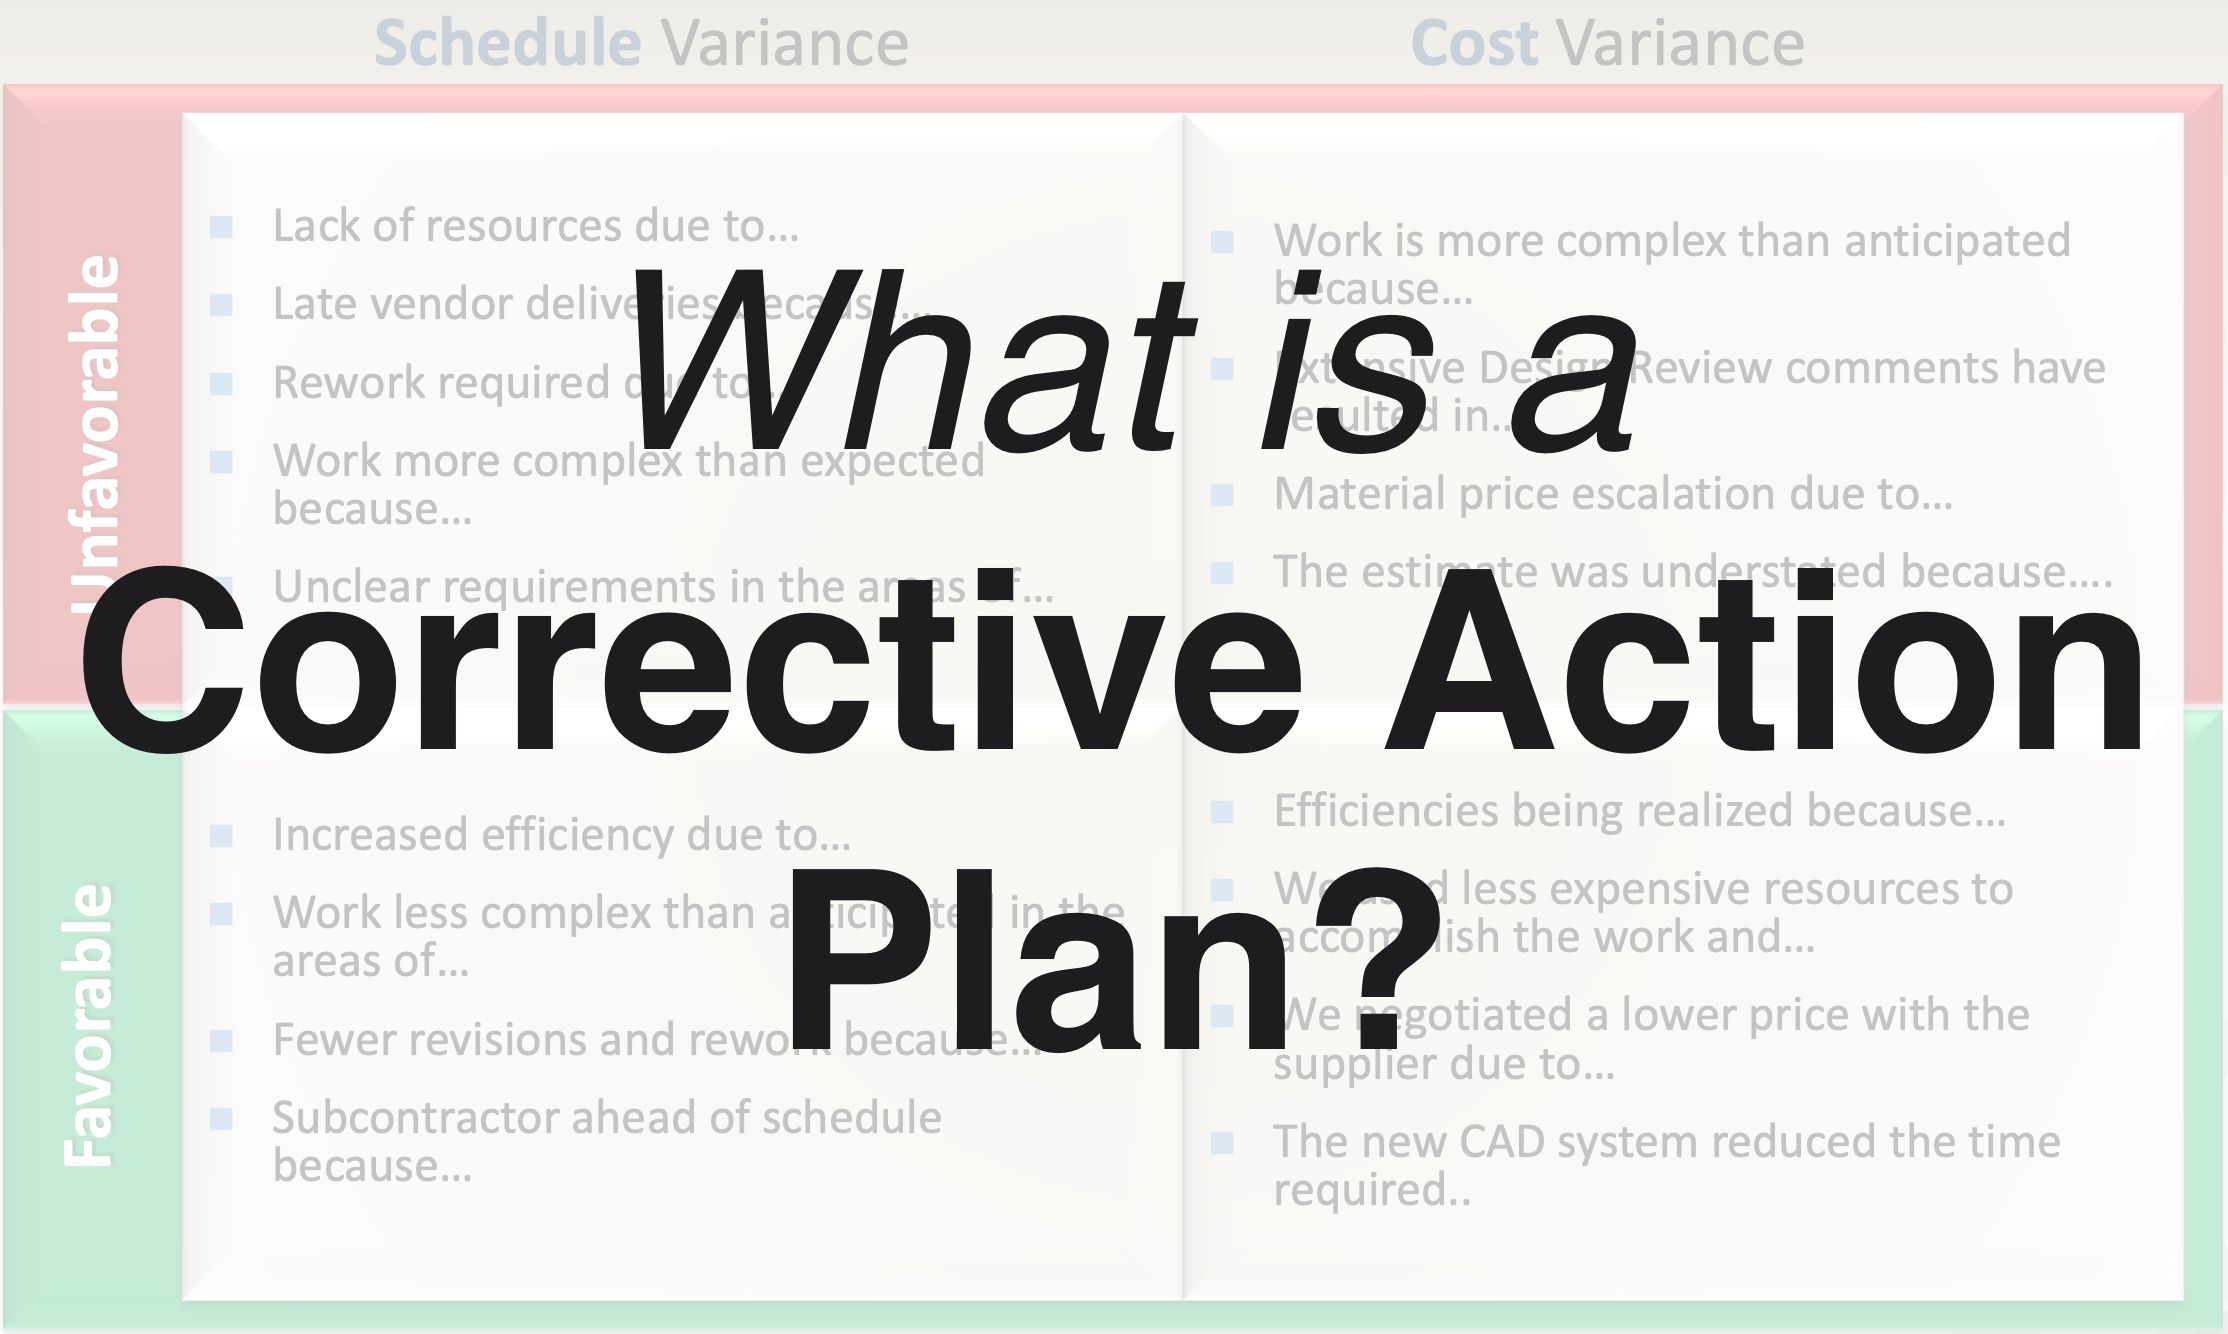 Corrective Action Plan